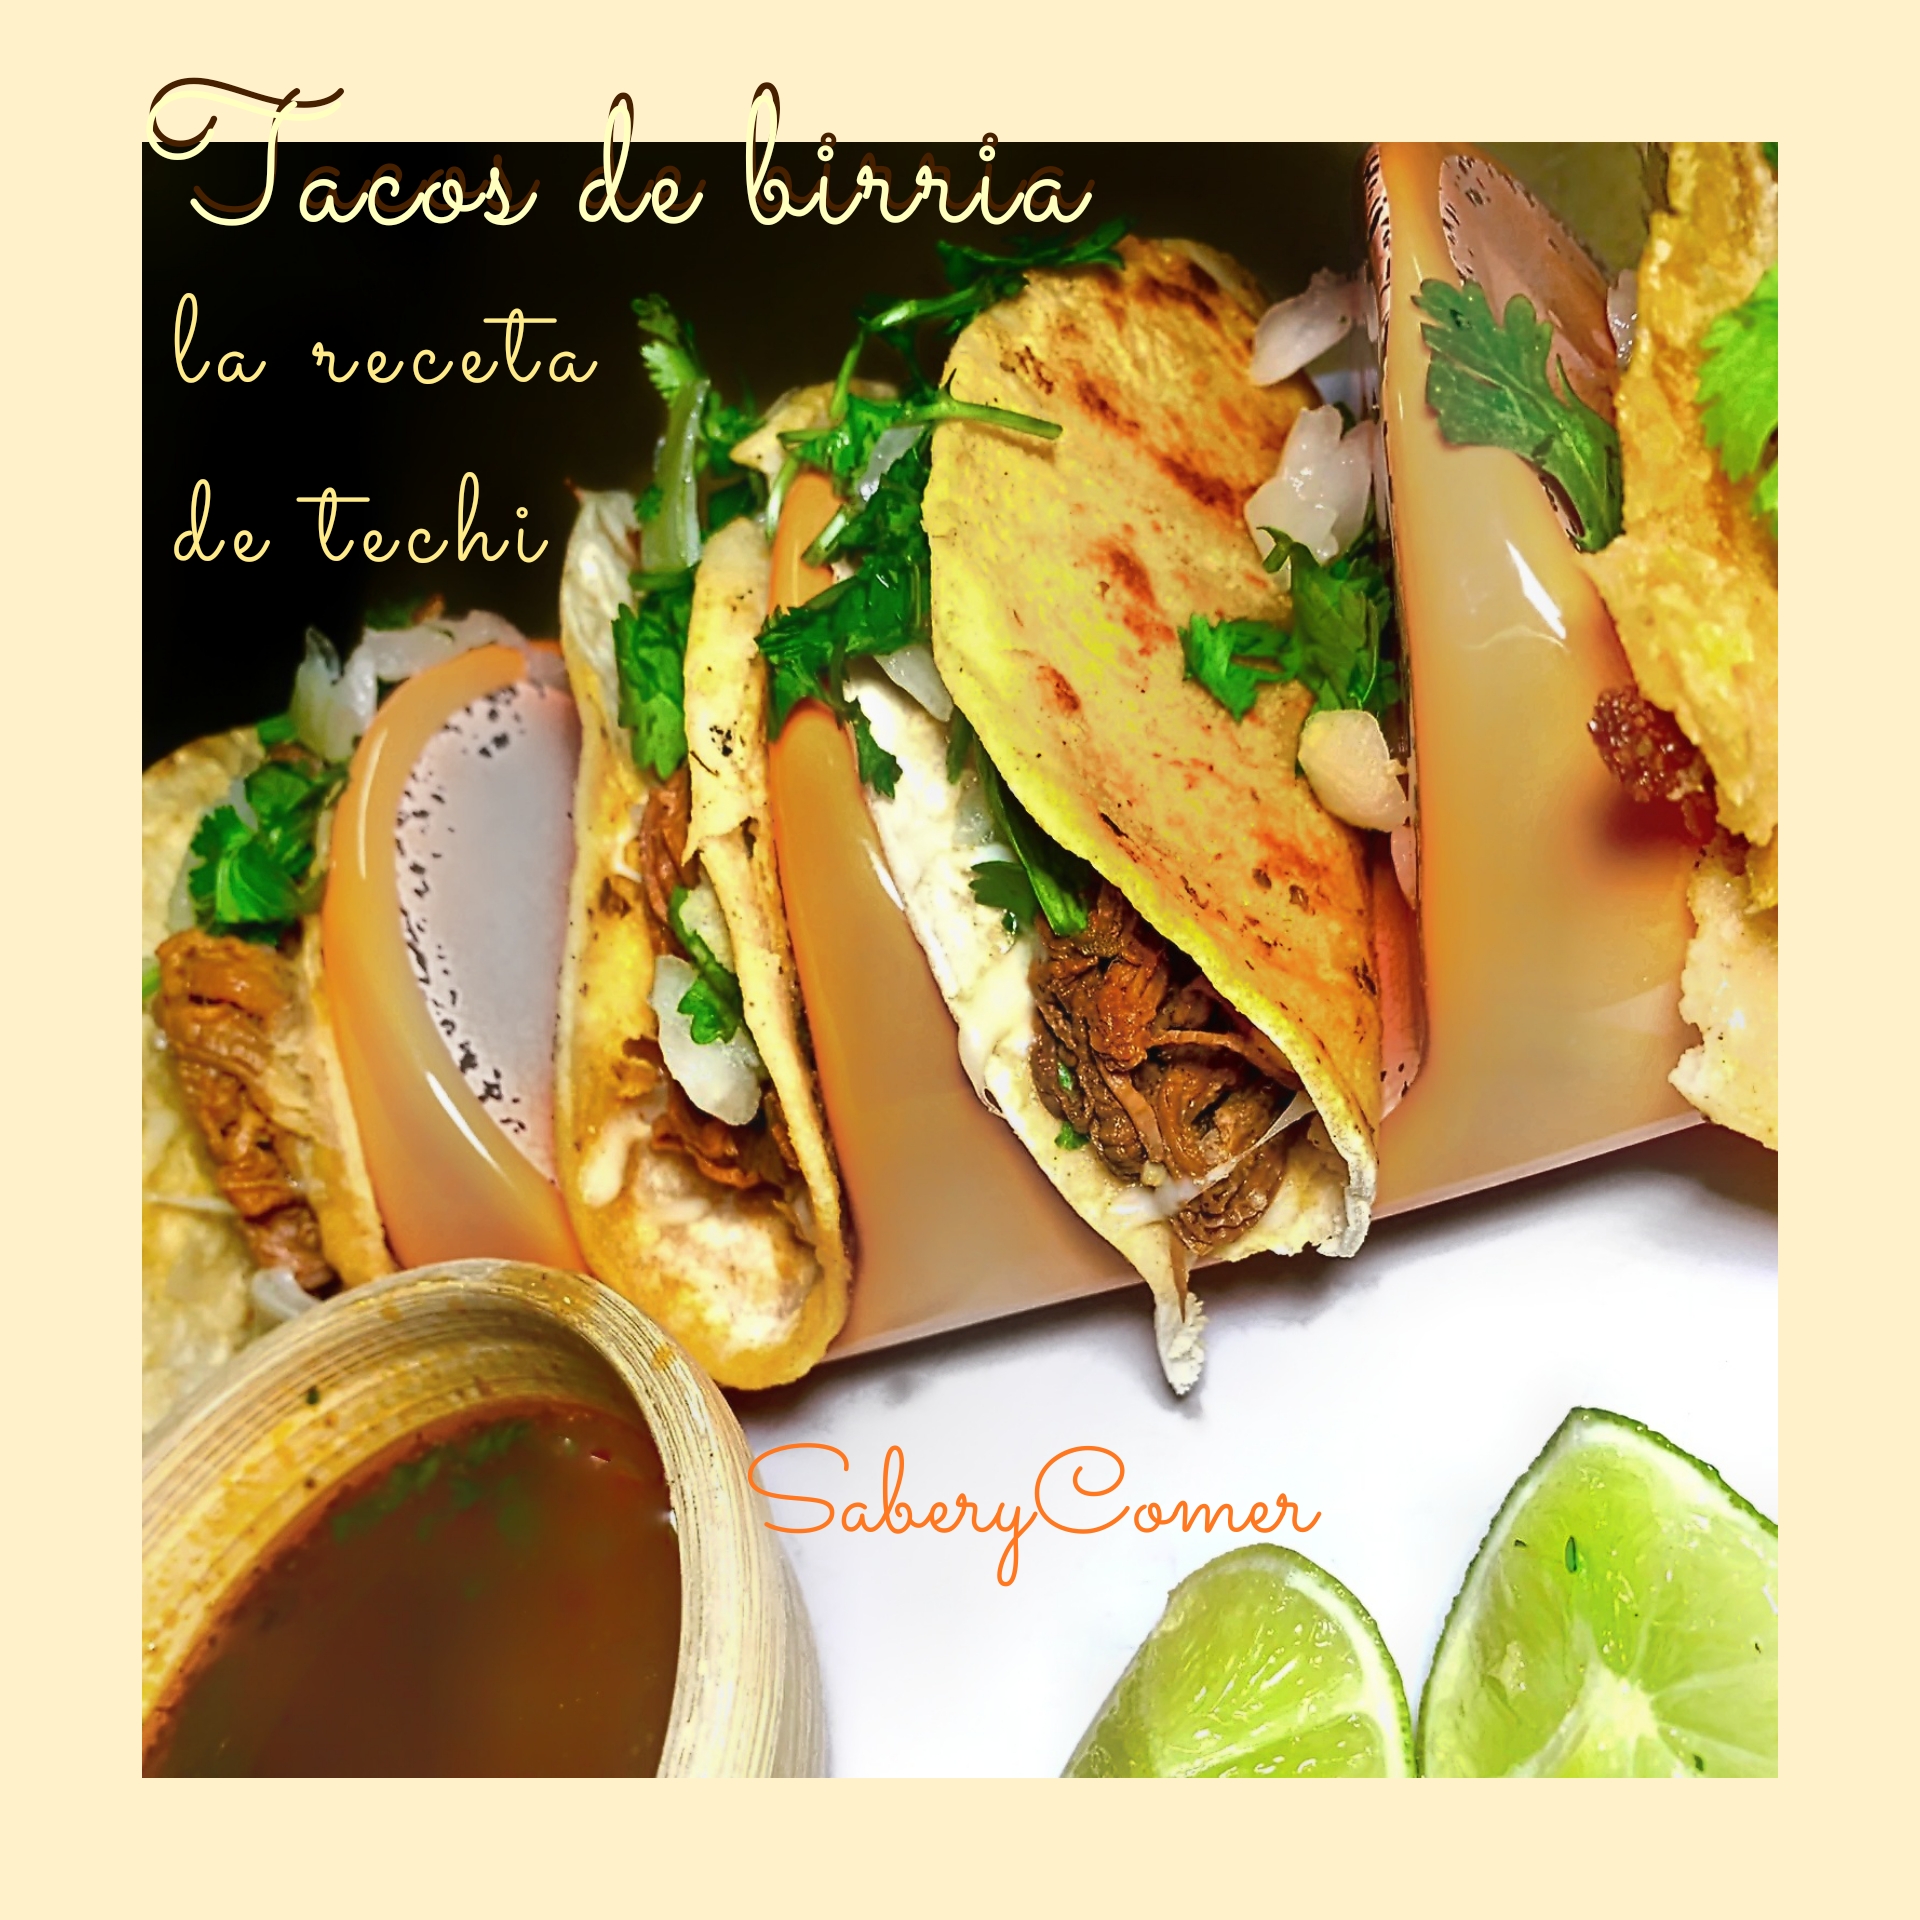 Tacos de birria receta fácil - Saber y Comer - @saberycomer #saberycomer